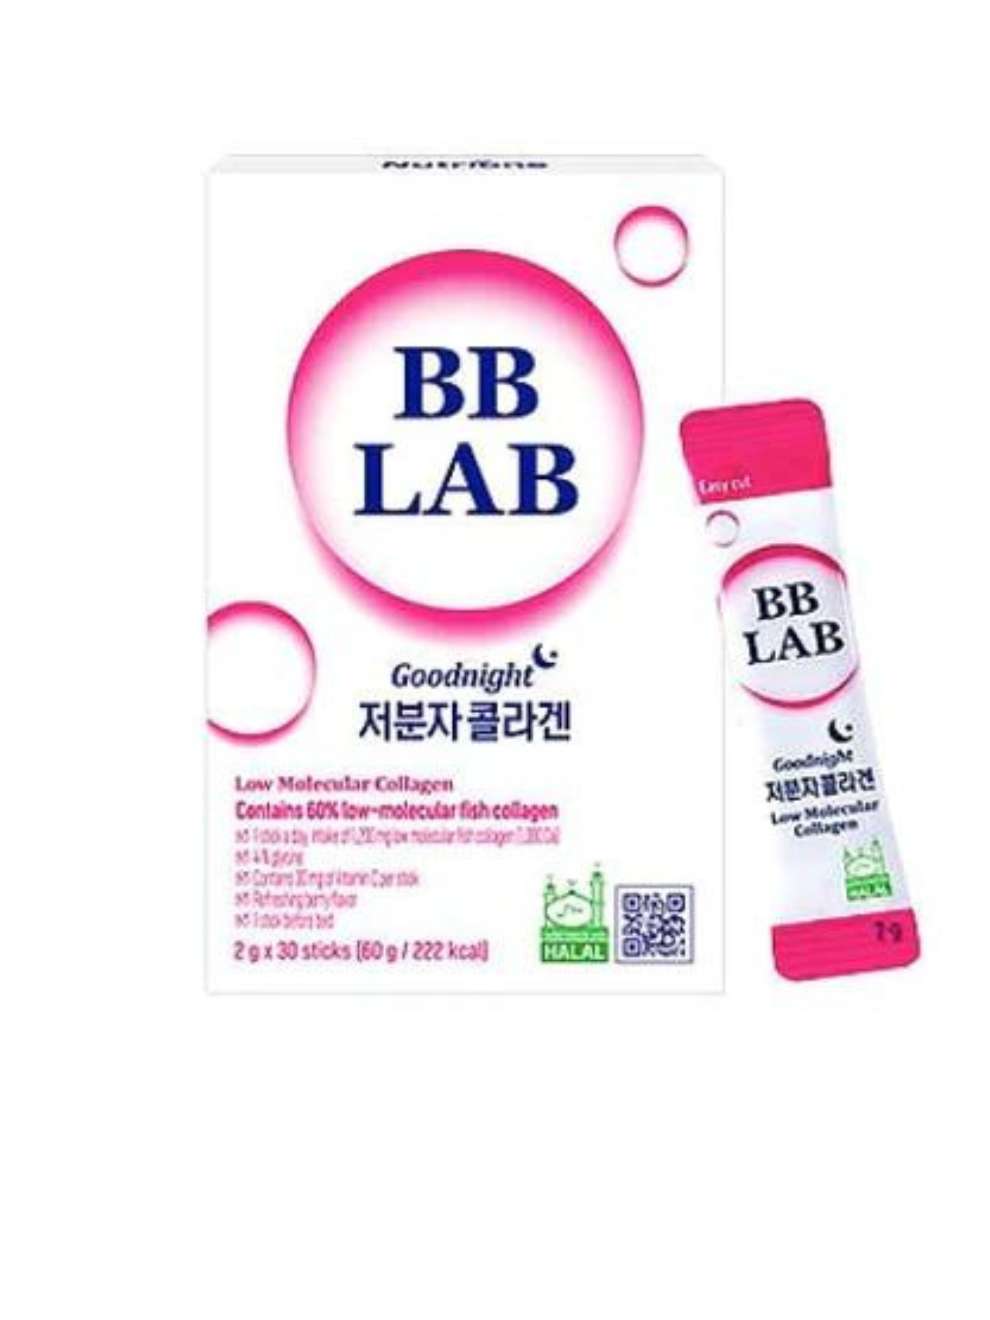 BB LAB Good Night Low Molecular Collagen 2g*30 Sticks